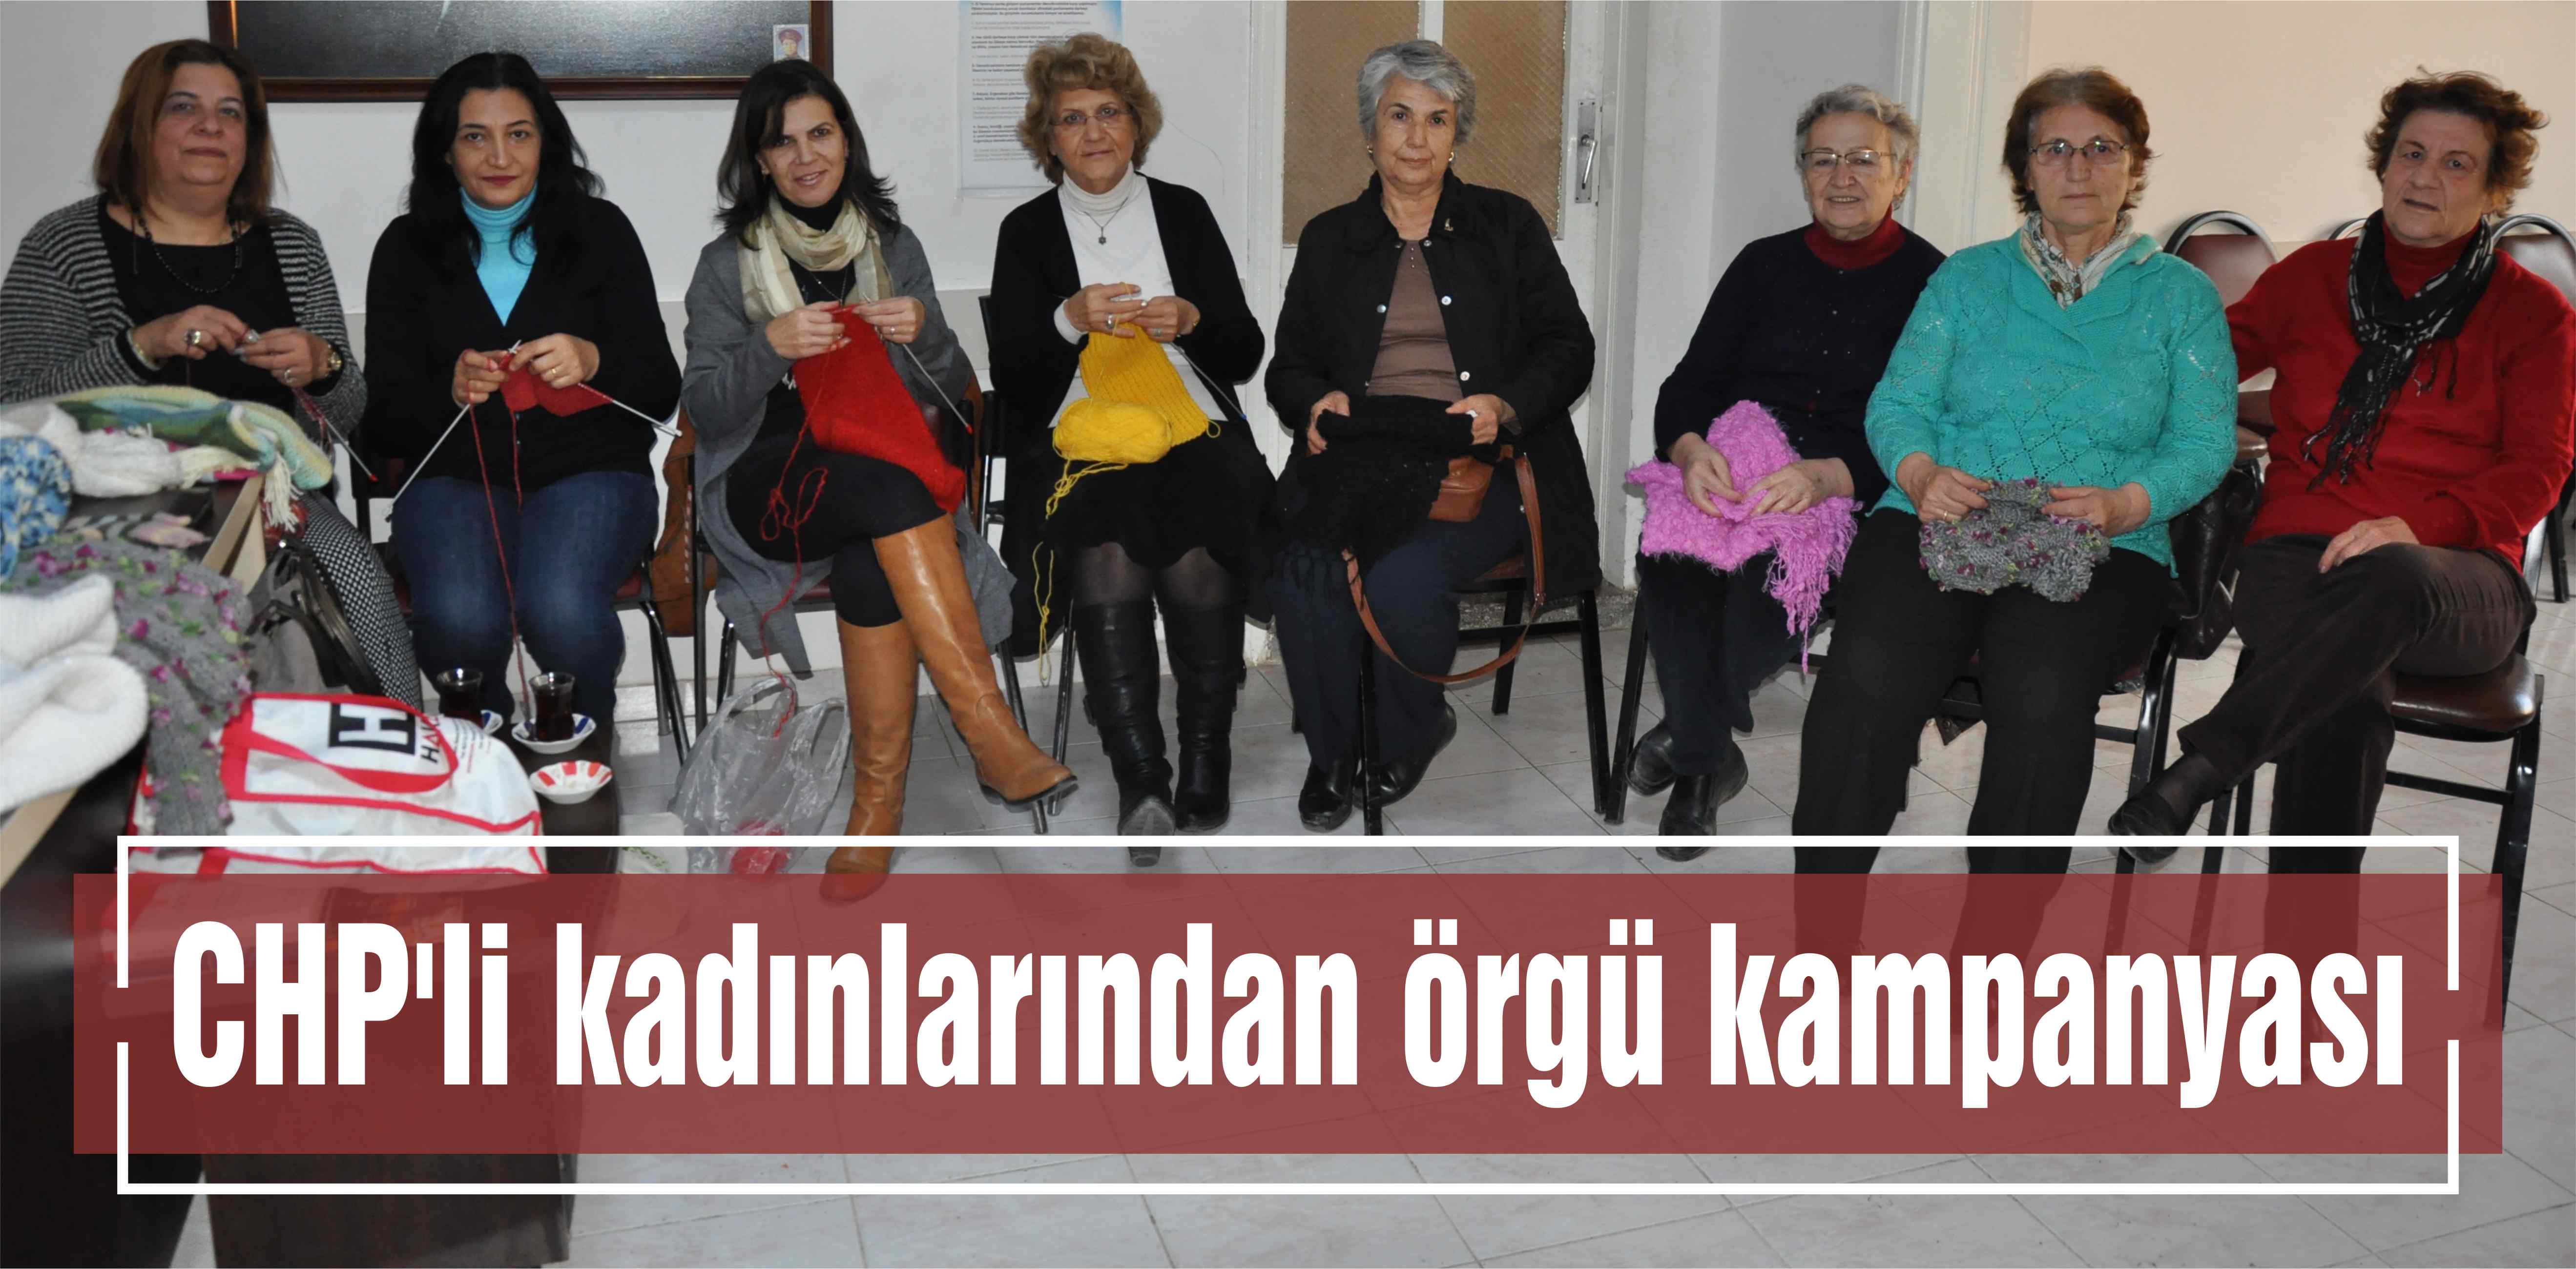 CHP’li kadınlarından örgü kampanyası